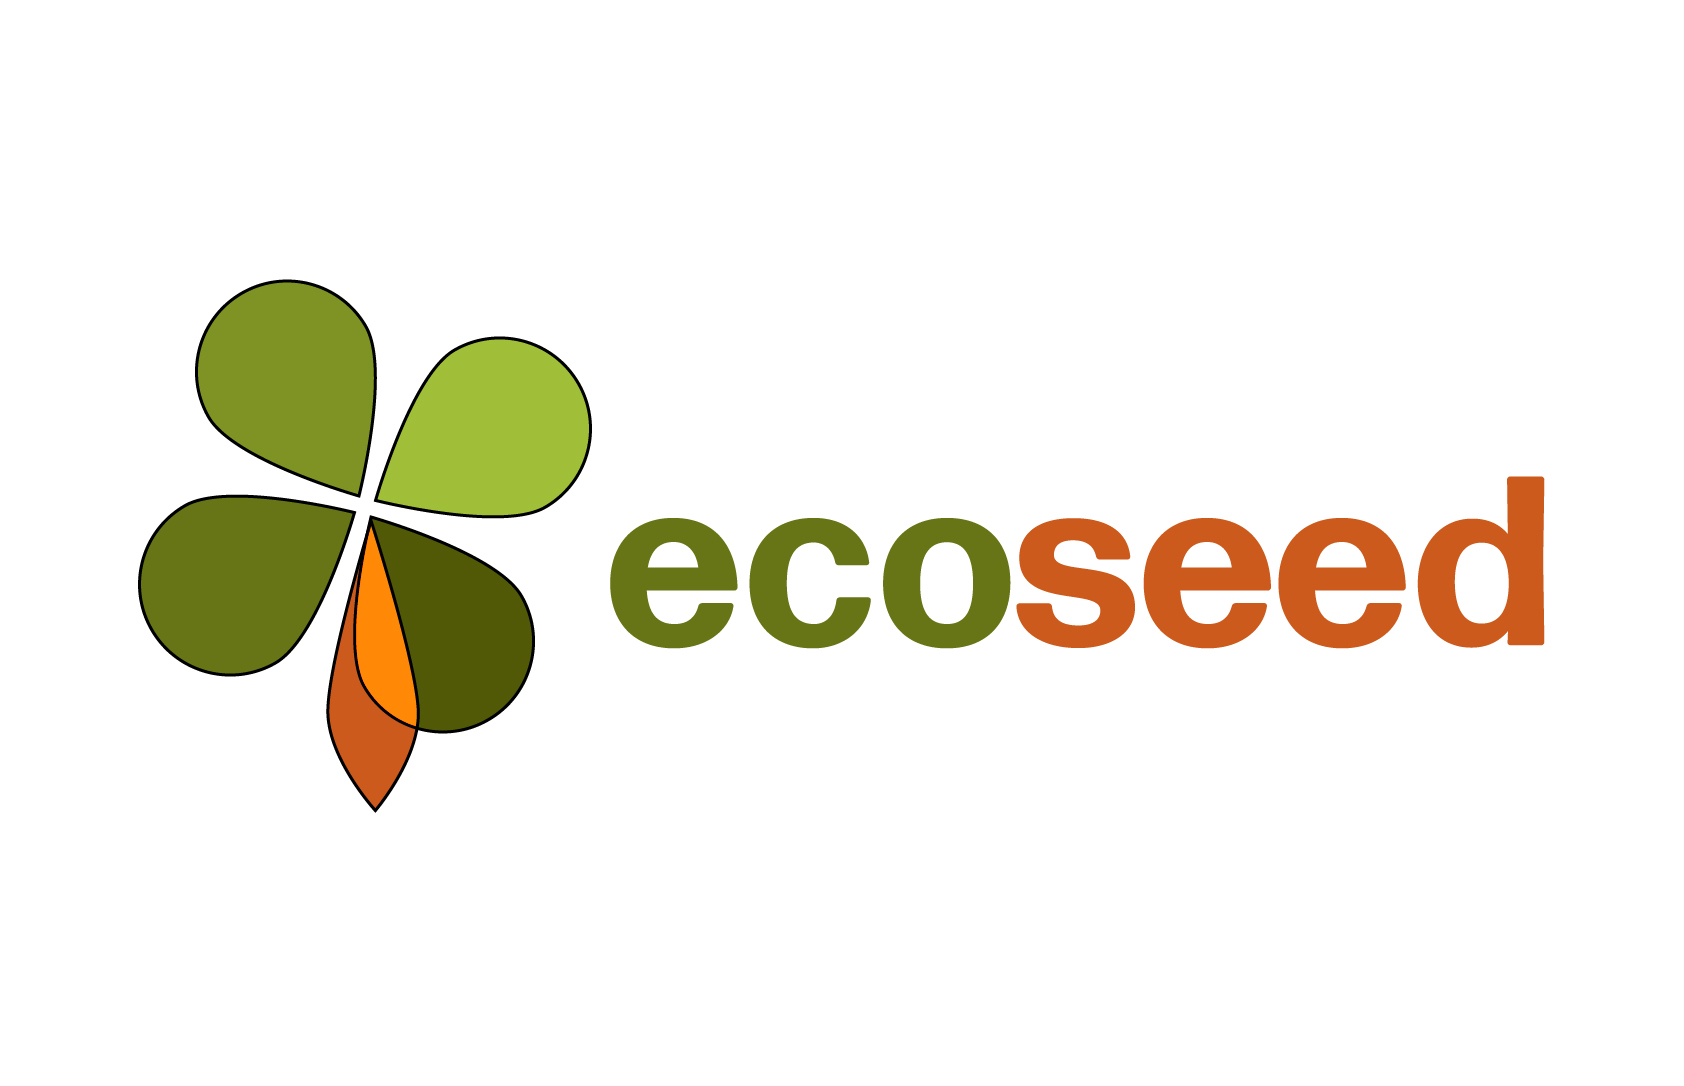 Ecoseed